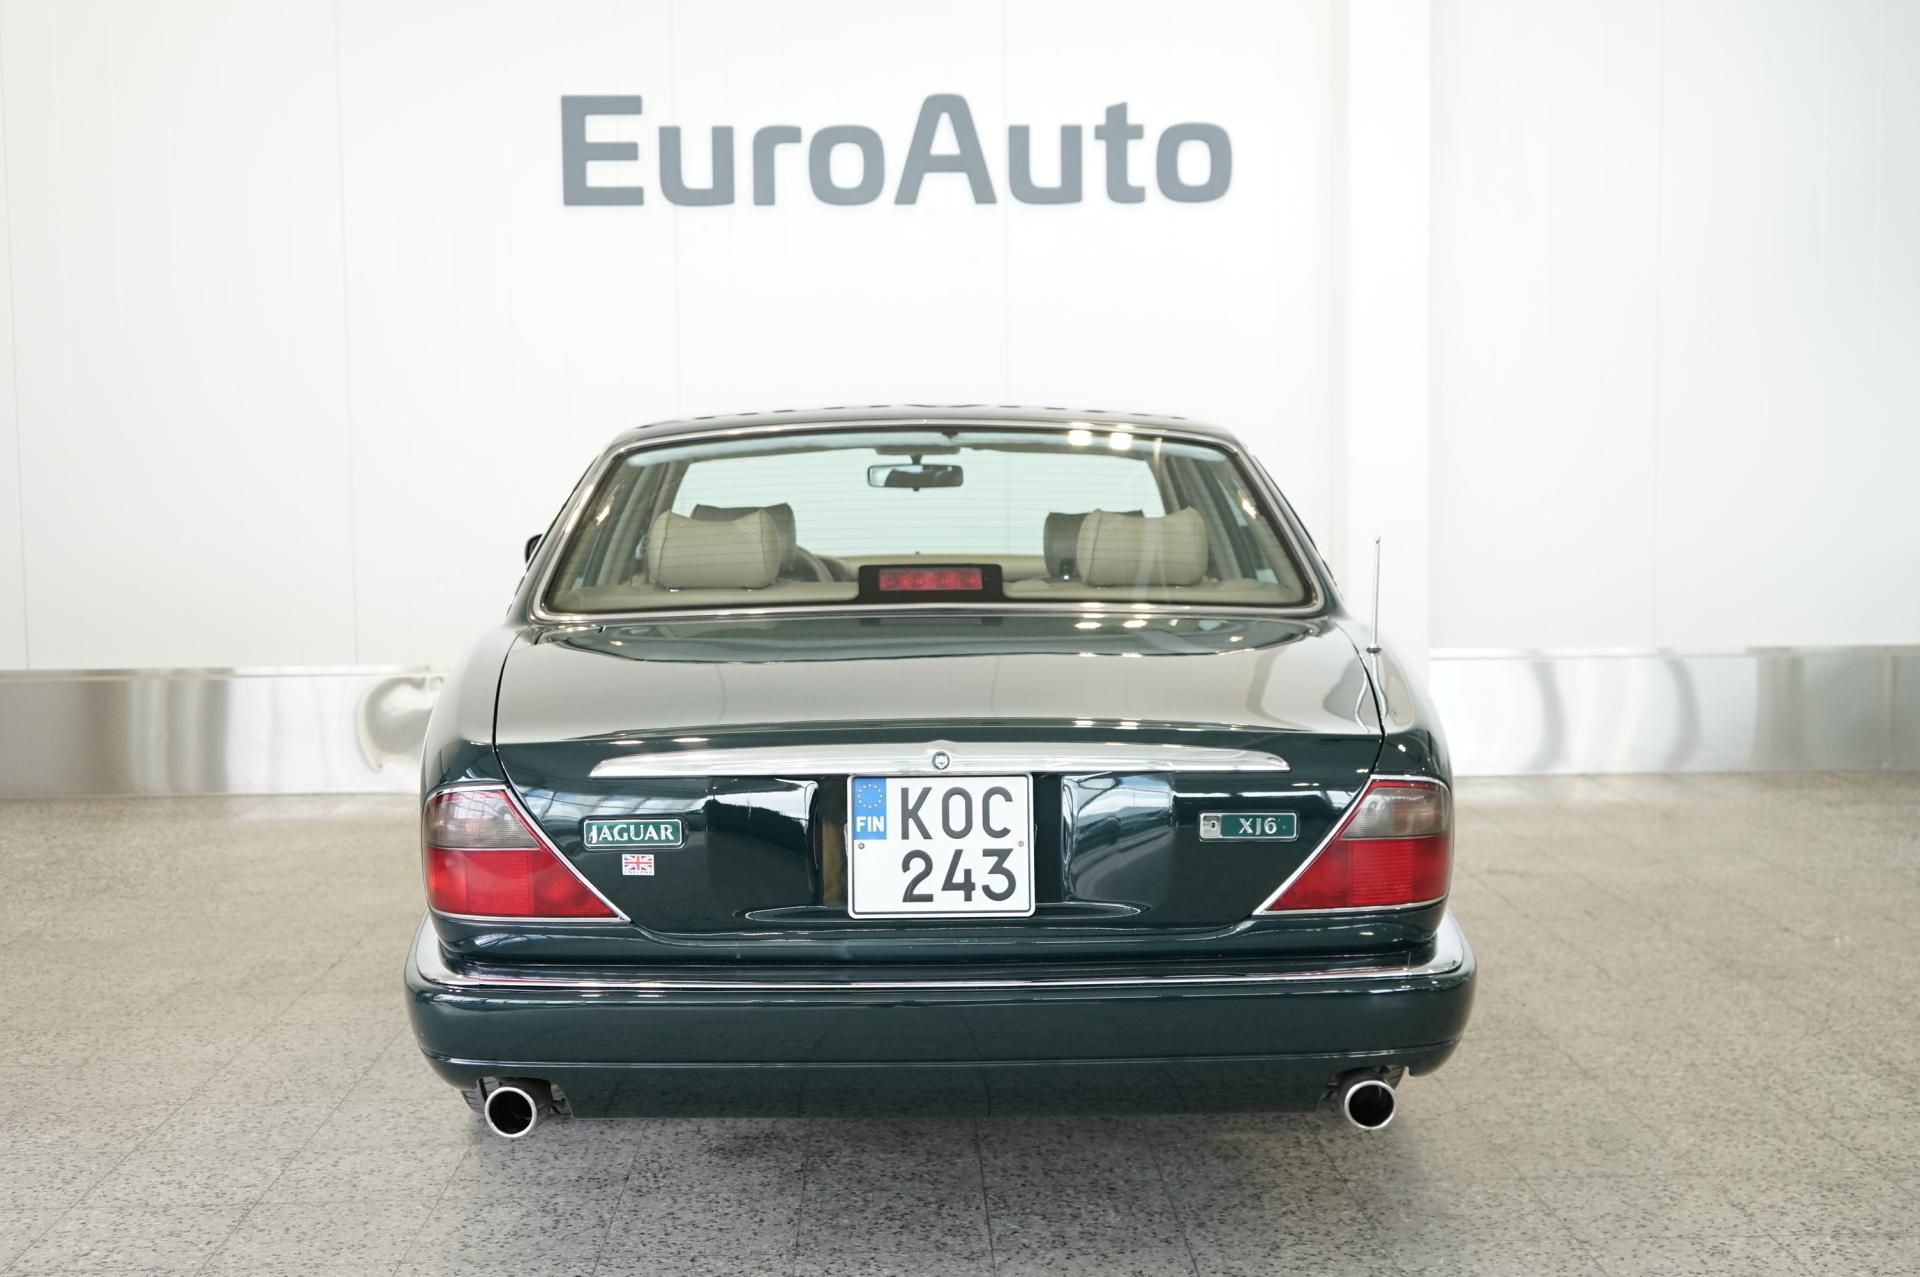 Jaguar XJ6 - EuroAuto